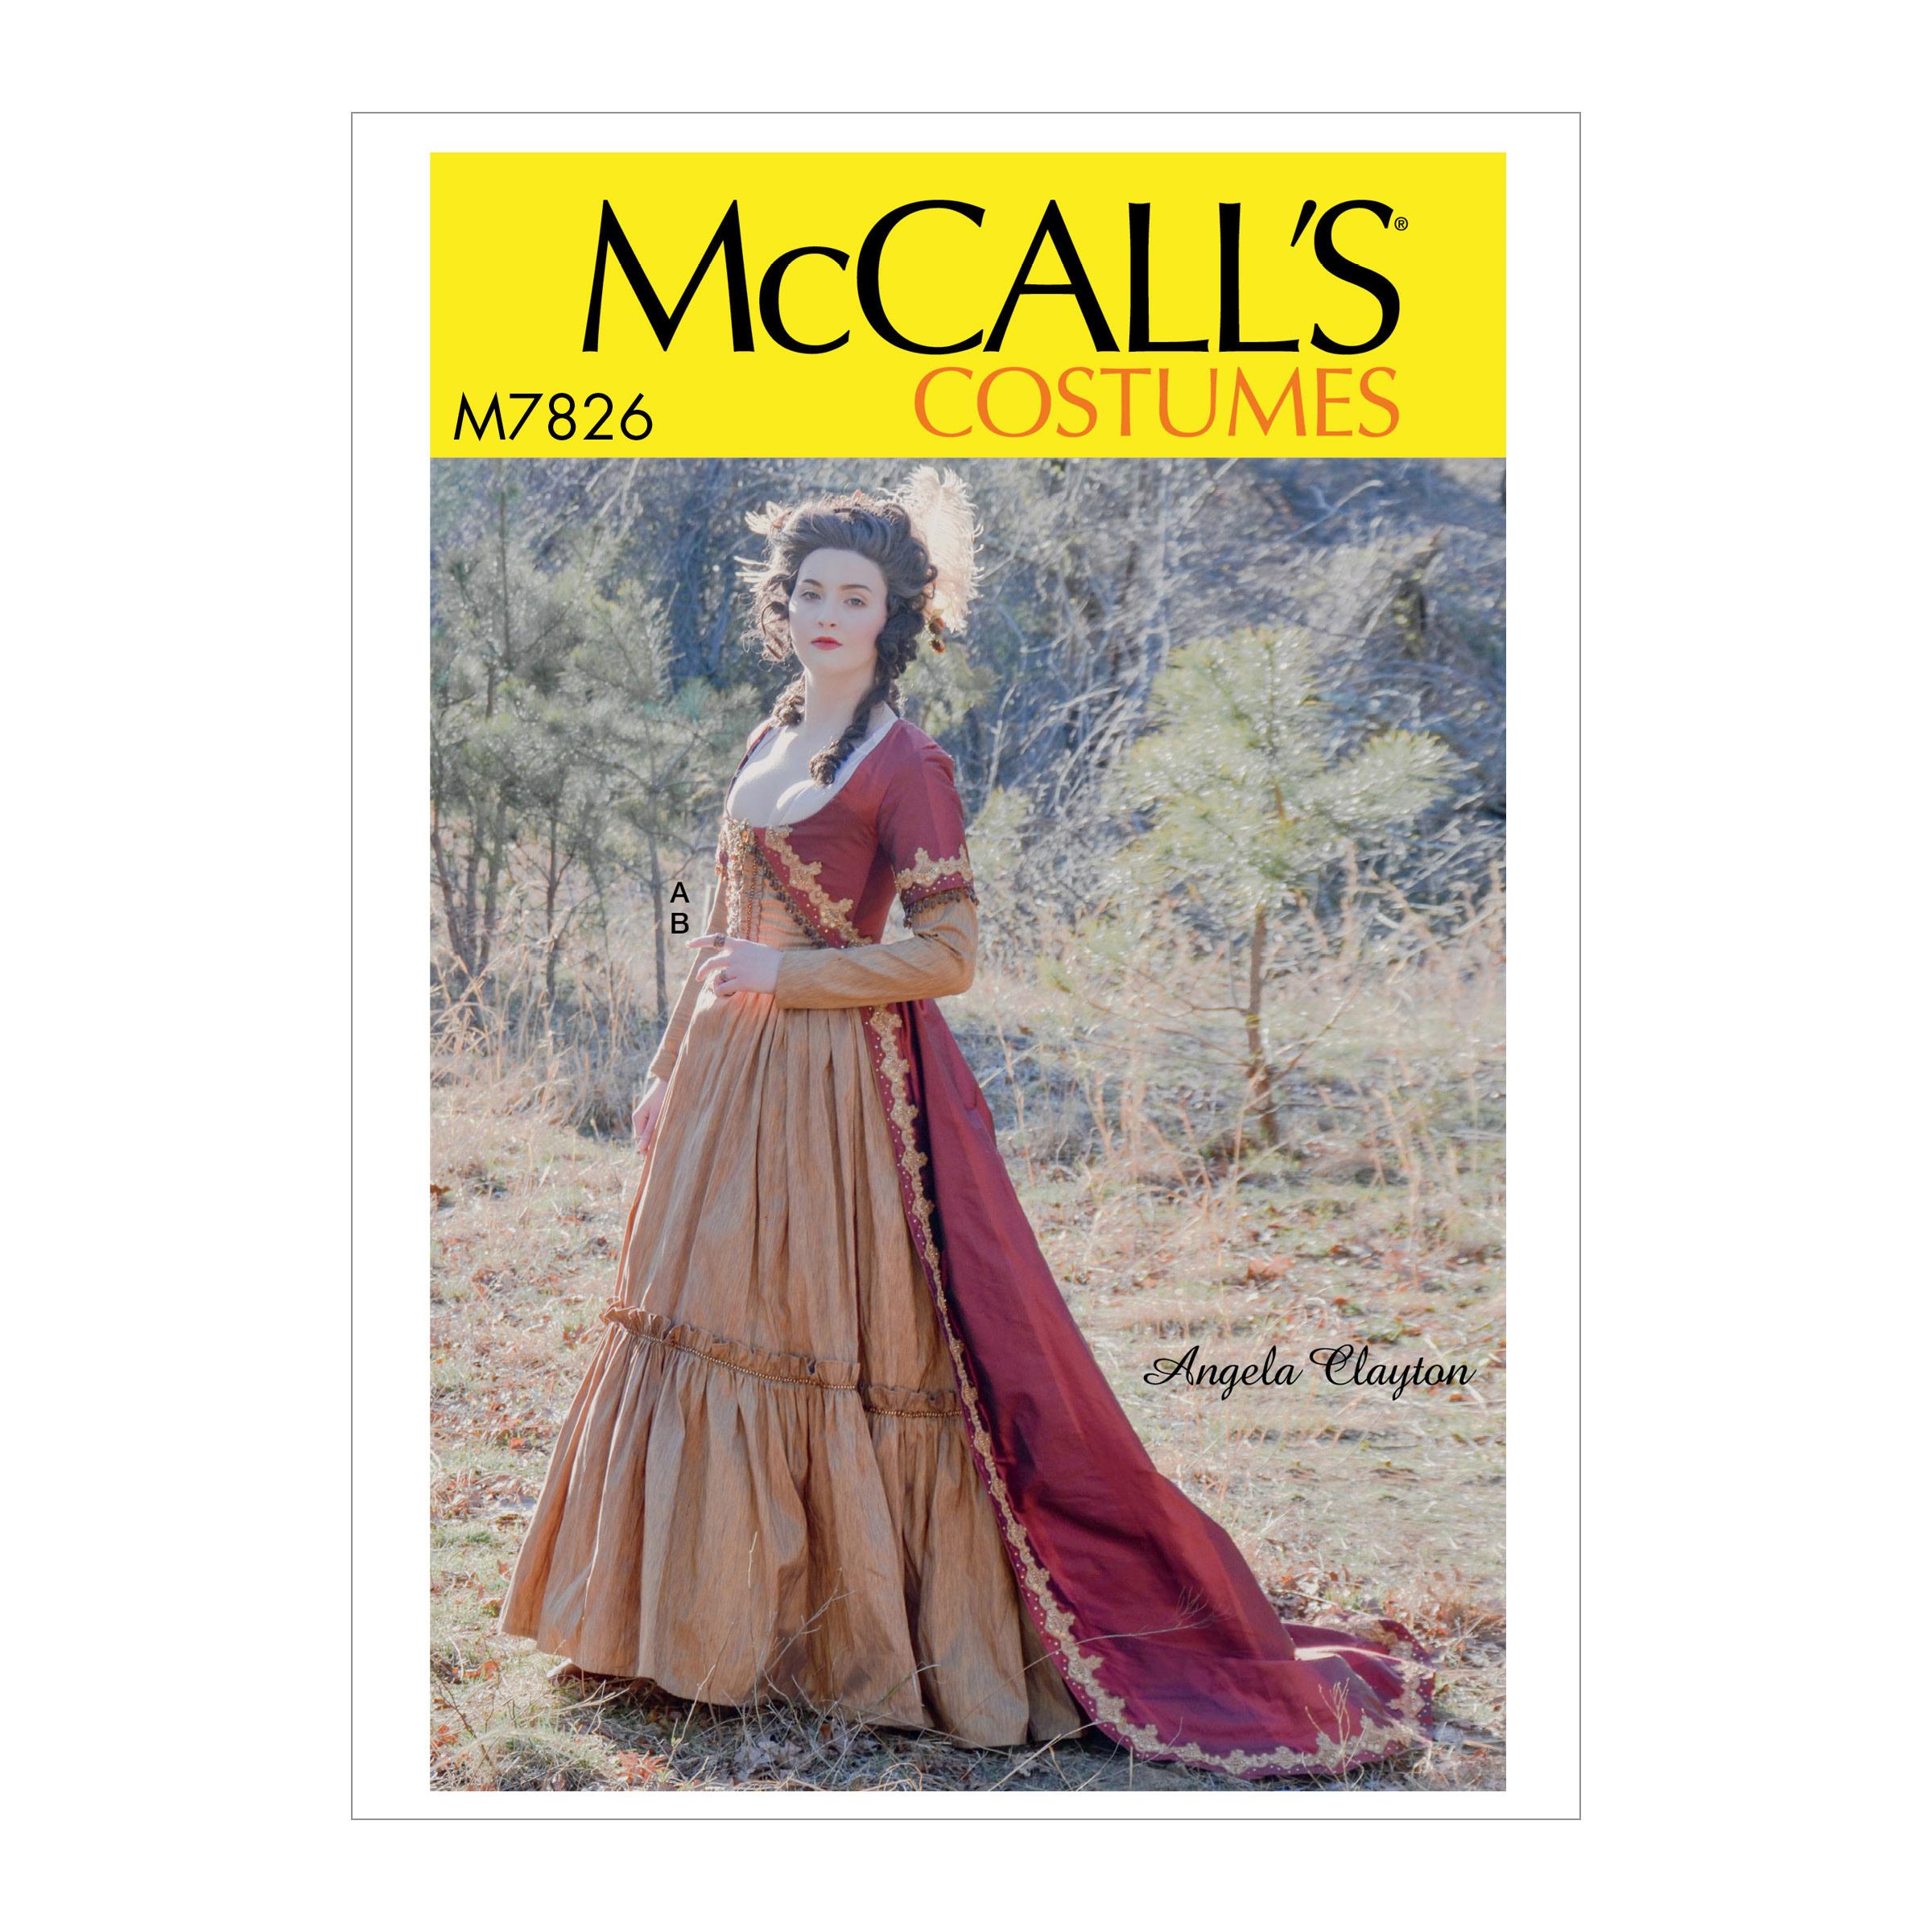 McCalls M7826 Costumes